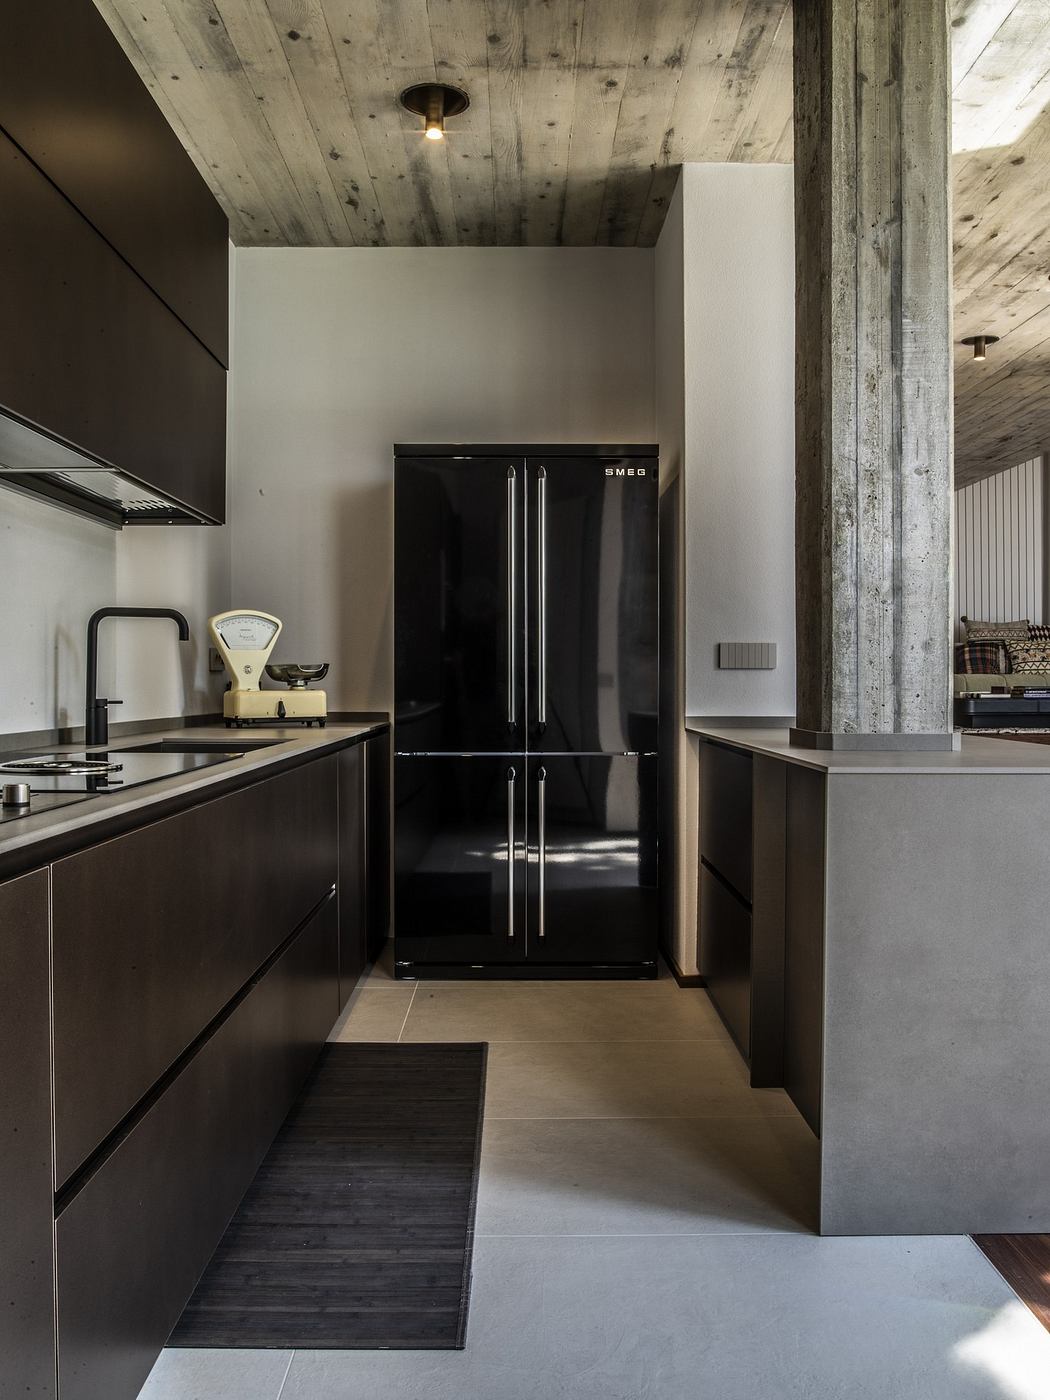 Modern kitchen with dark cabinets, concrete pillars, and a sleek black refrigerator.